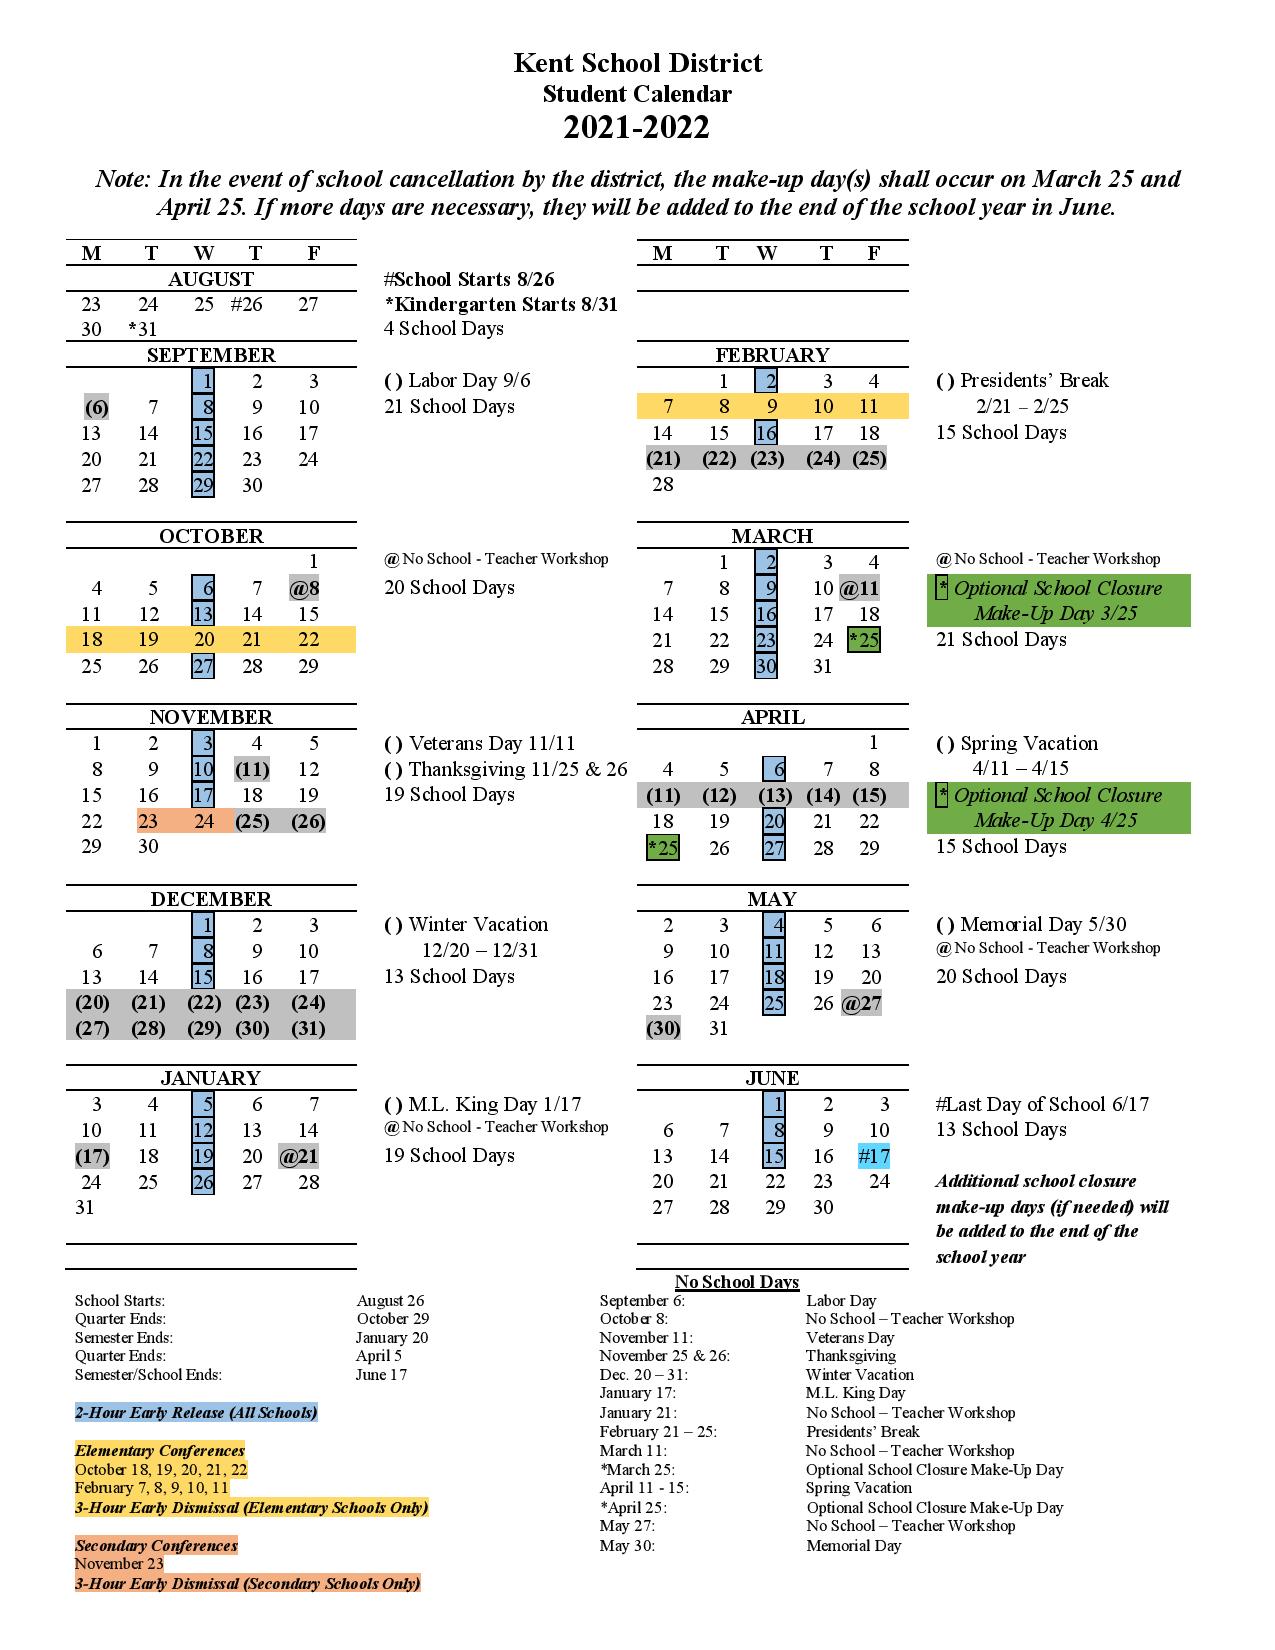 Kent School District Calendar 2022 in PDF - Download Here